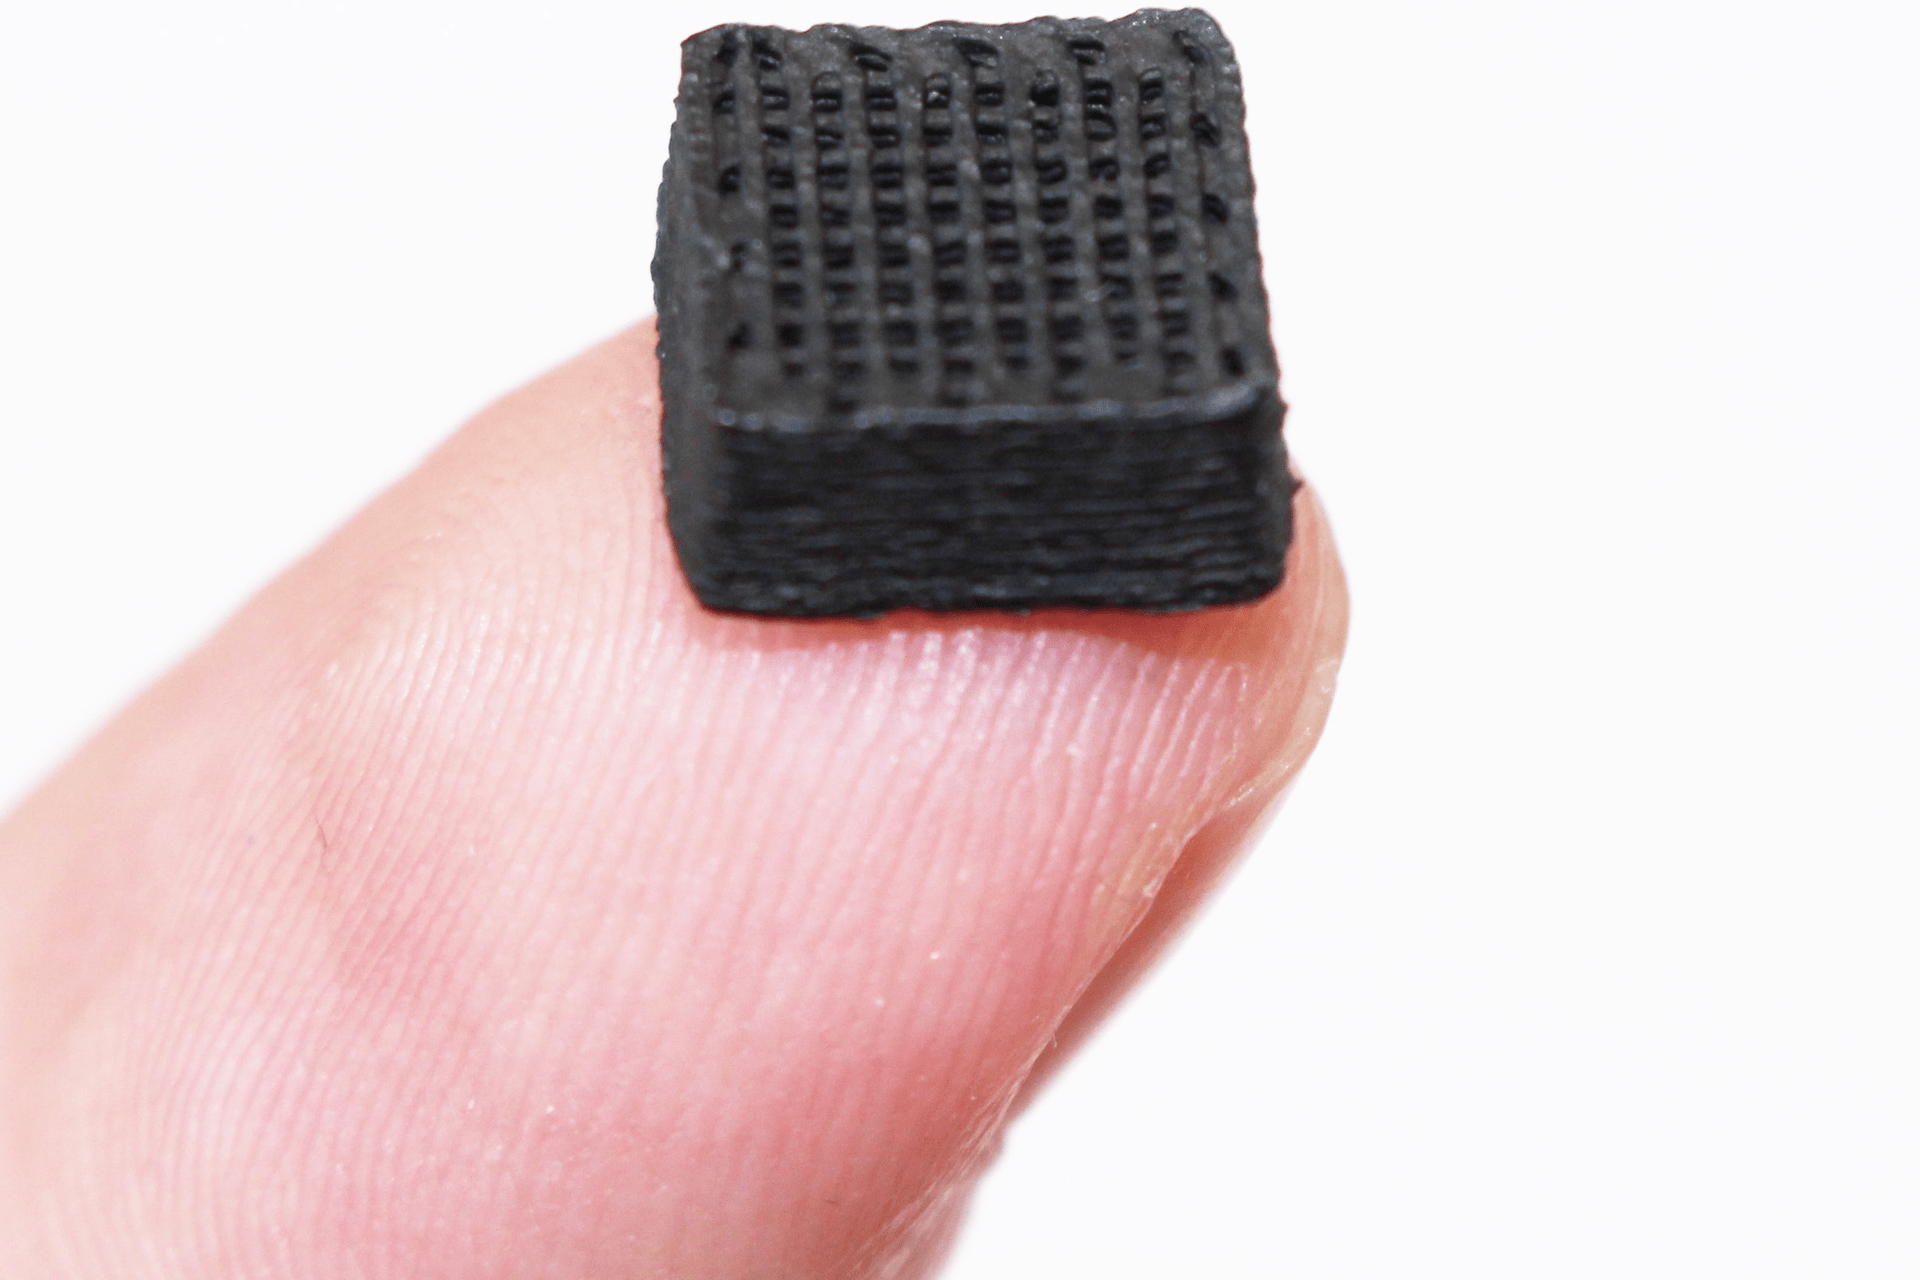 Нови материјал за штампану плочу добијен од измета кохинила: центиметар широк тест коцкаст направљен тродимензионалним штампачем (Фото: ЕМПА)